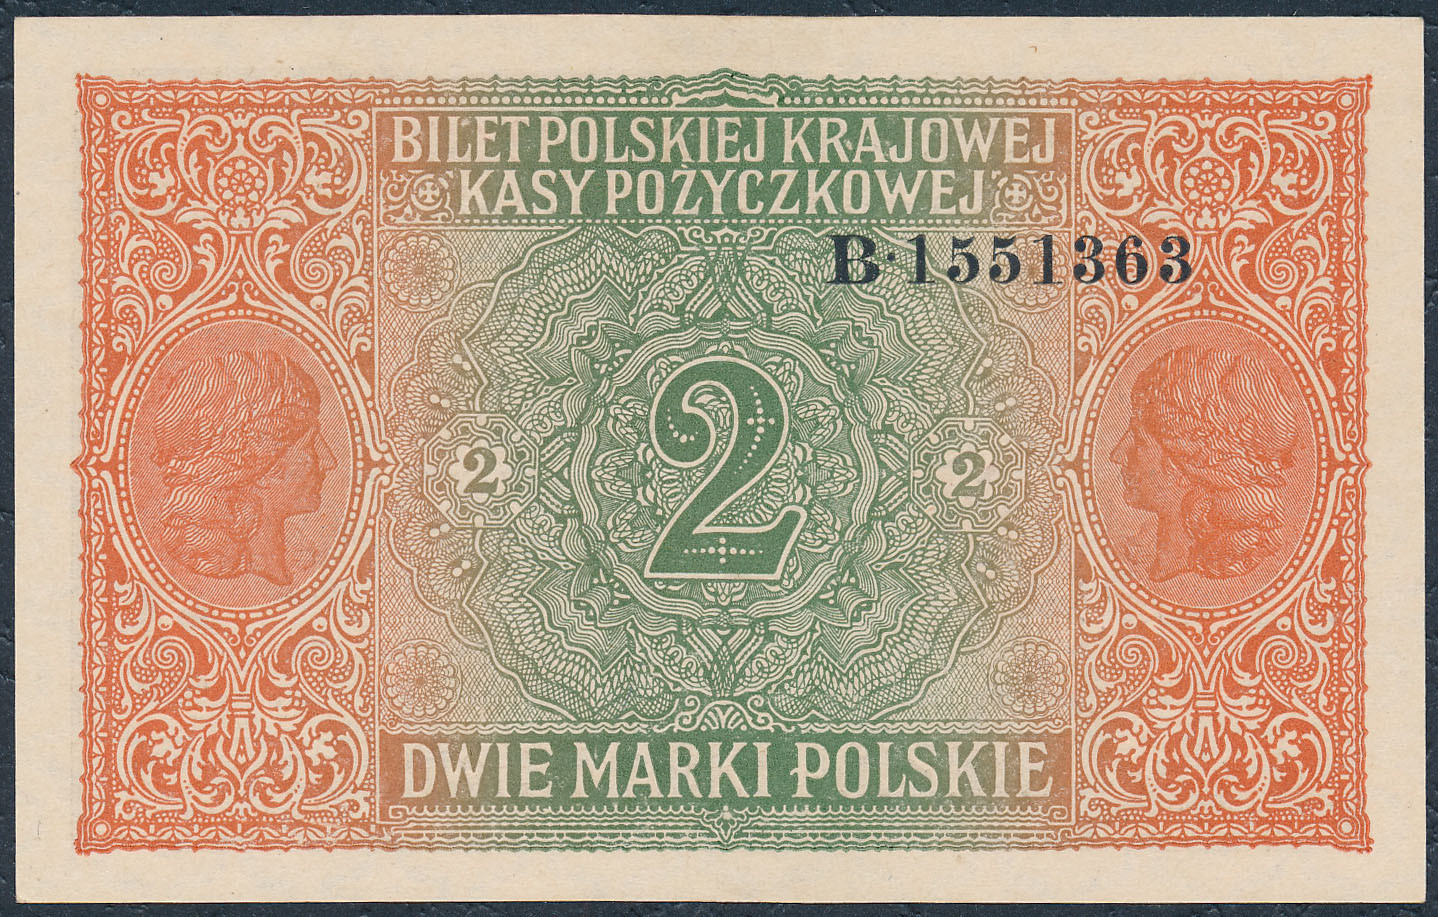 2 marki polskie 1916 seria B, GENERAŁ